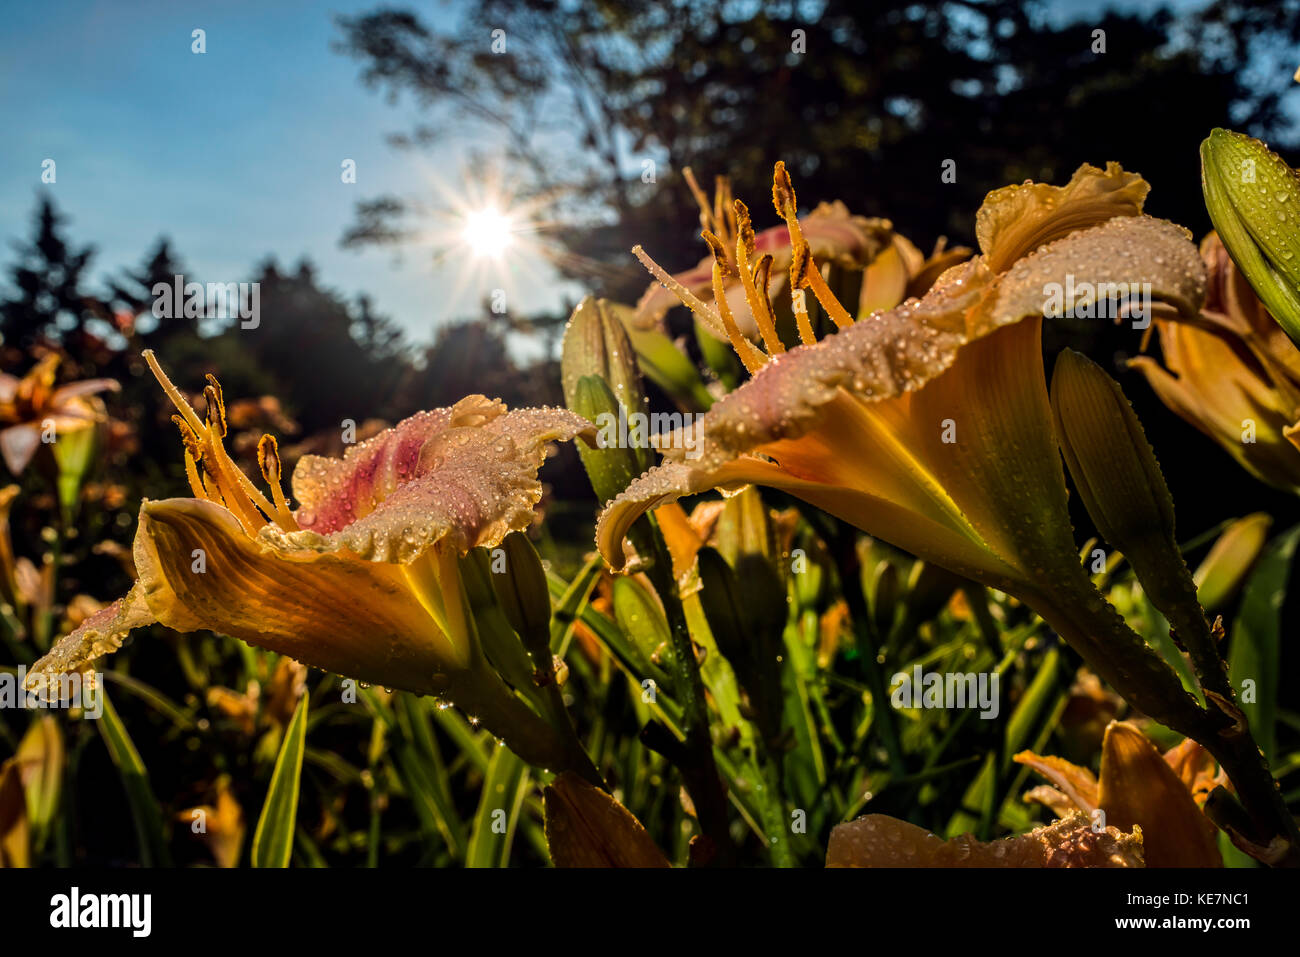 Sonne hinter Taglilien (Hemerocallis) 'Soft Antworten' Hemerocallidaceae; New York Botanical Garden; Bronx, New York, Vereinigte Staaten von Amerika Stockfoto